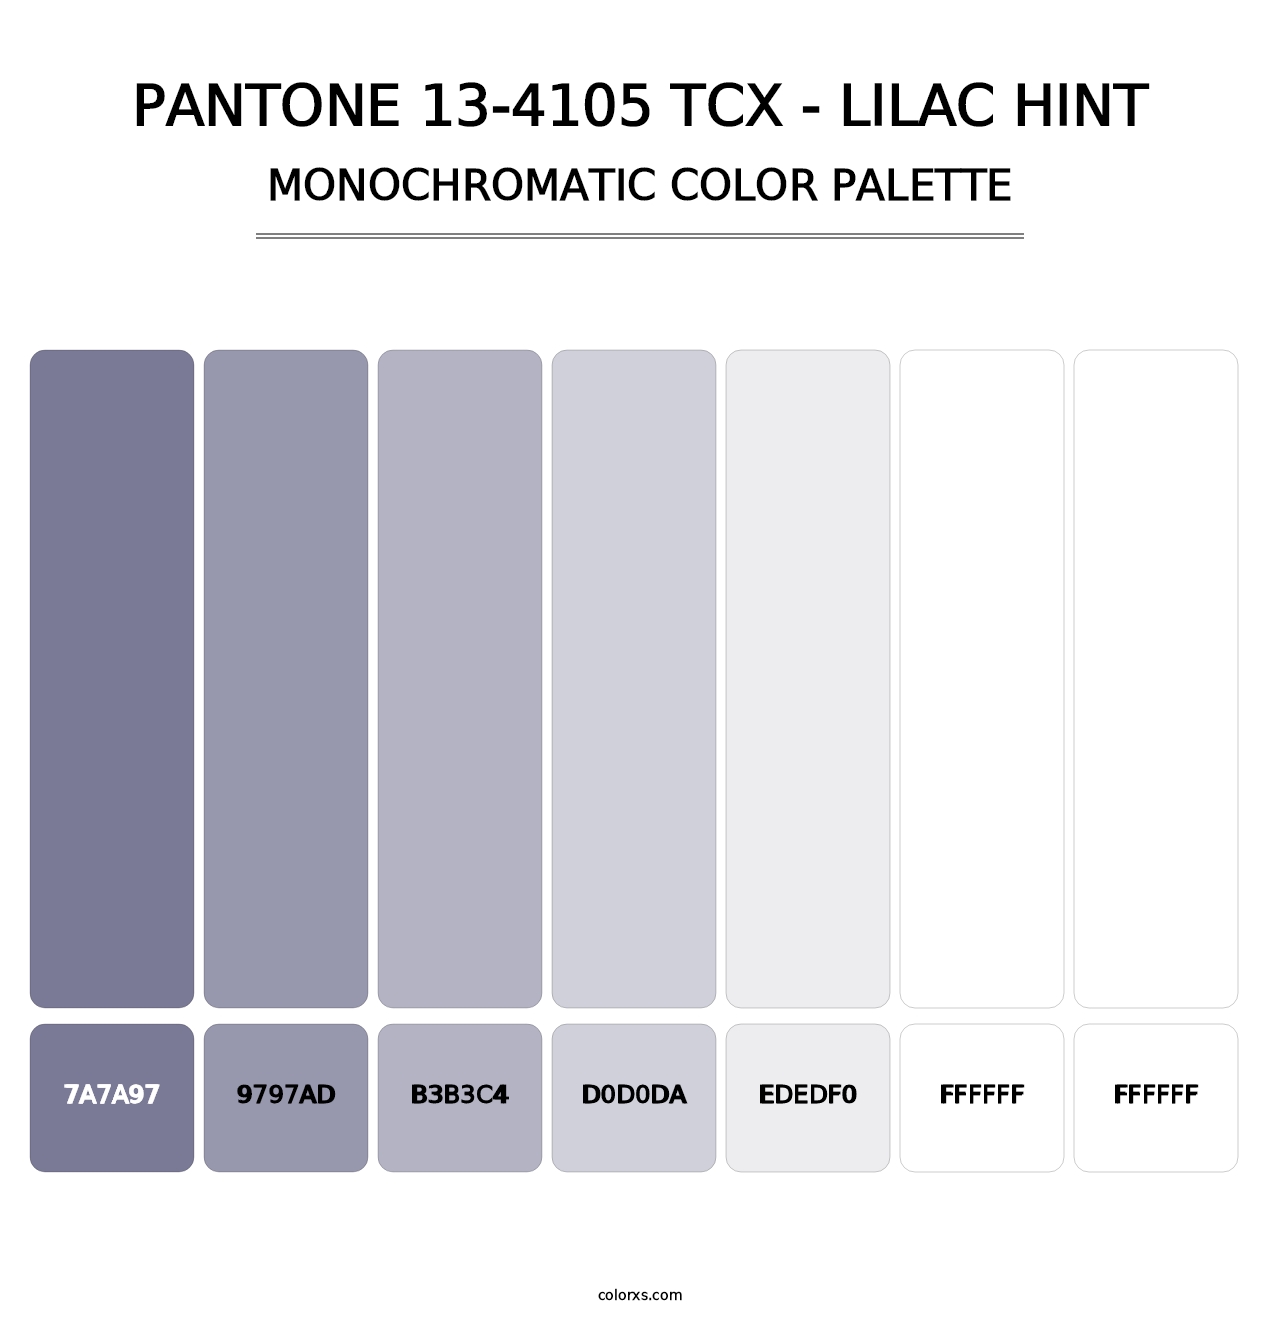 PANTONE 13-4105 TCX - Lilac Hint - Monochromatic Color Palette